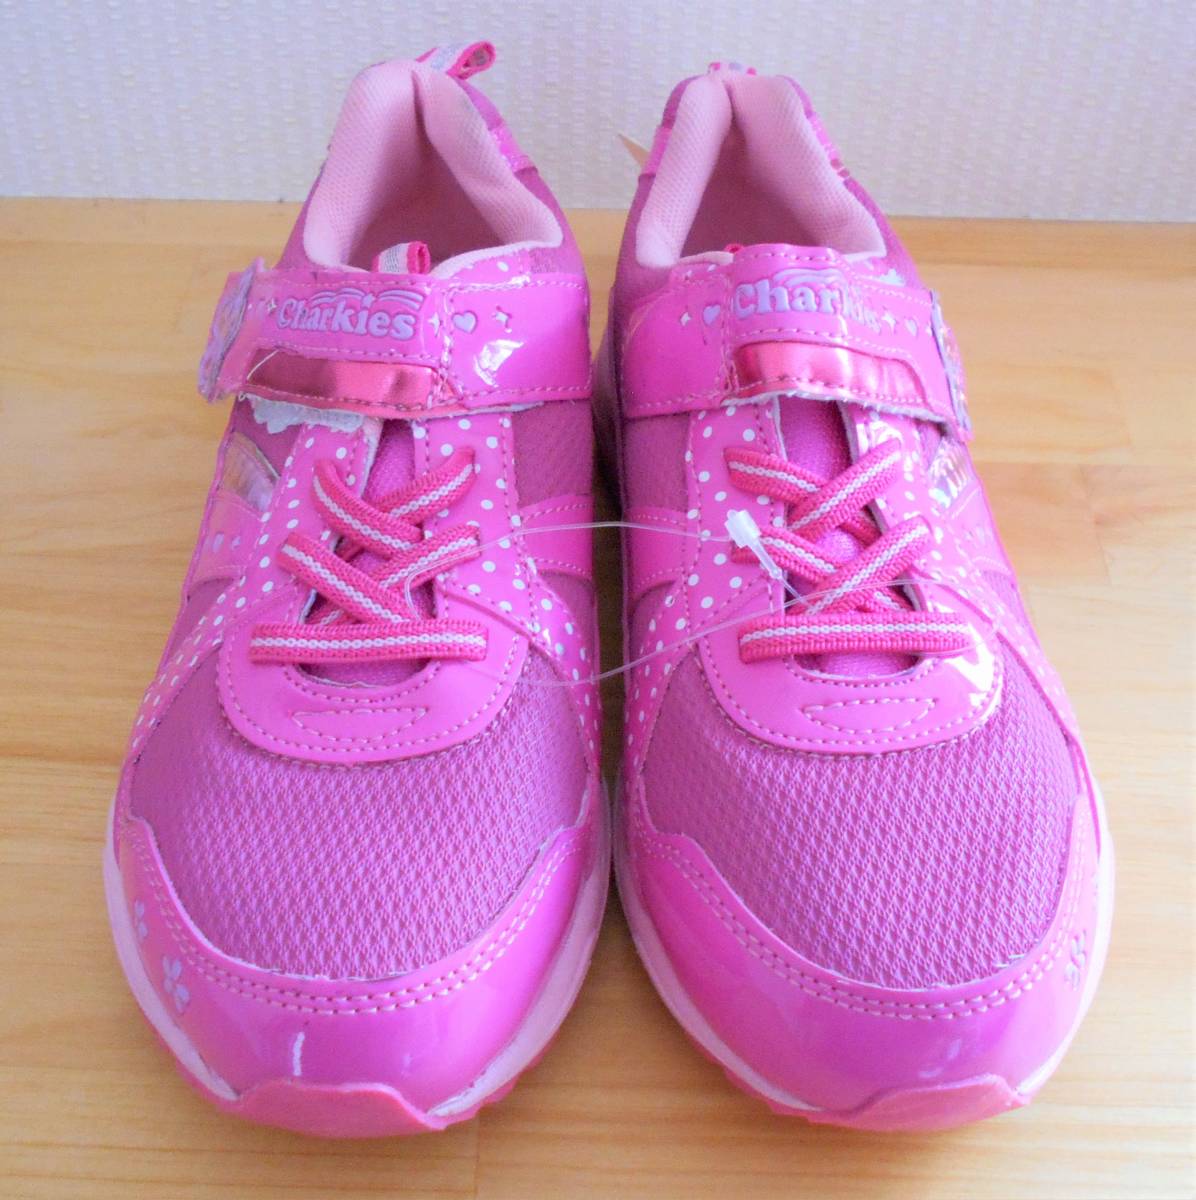 [ новый товар ] Kids charkies спортивные туфли 20.5cm розовый обувь девушки * подтвердите пожалуйста 